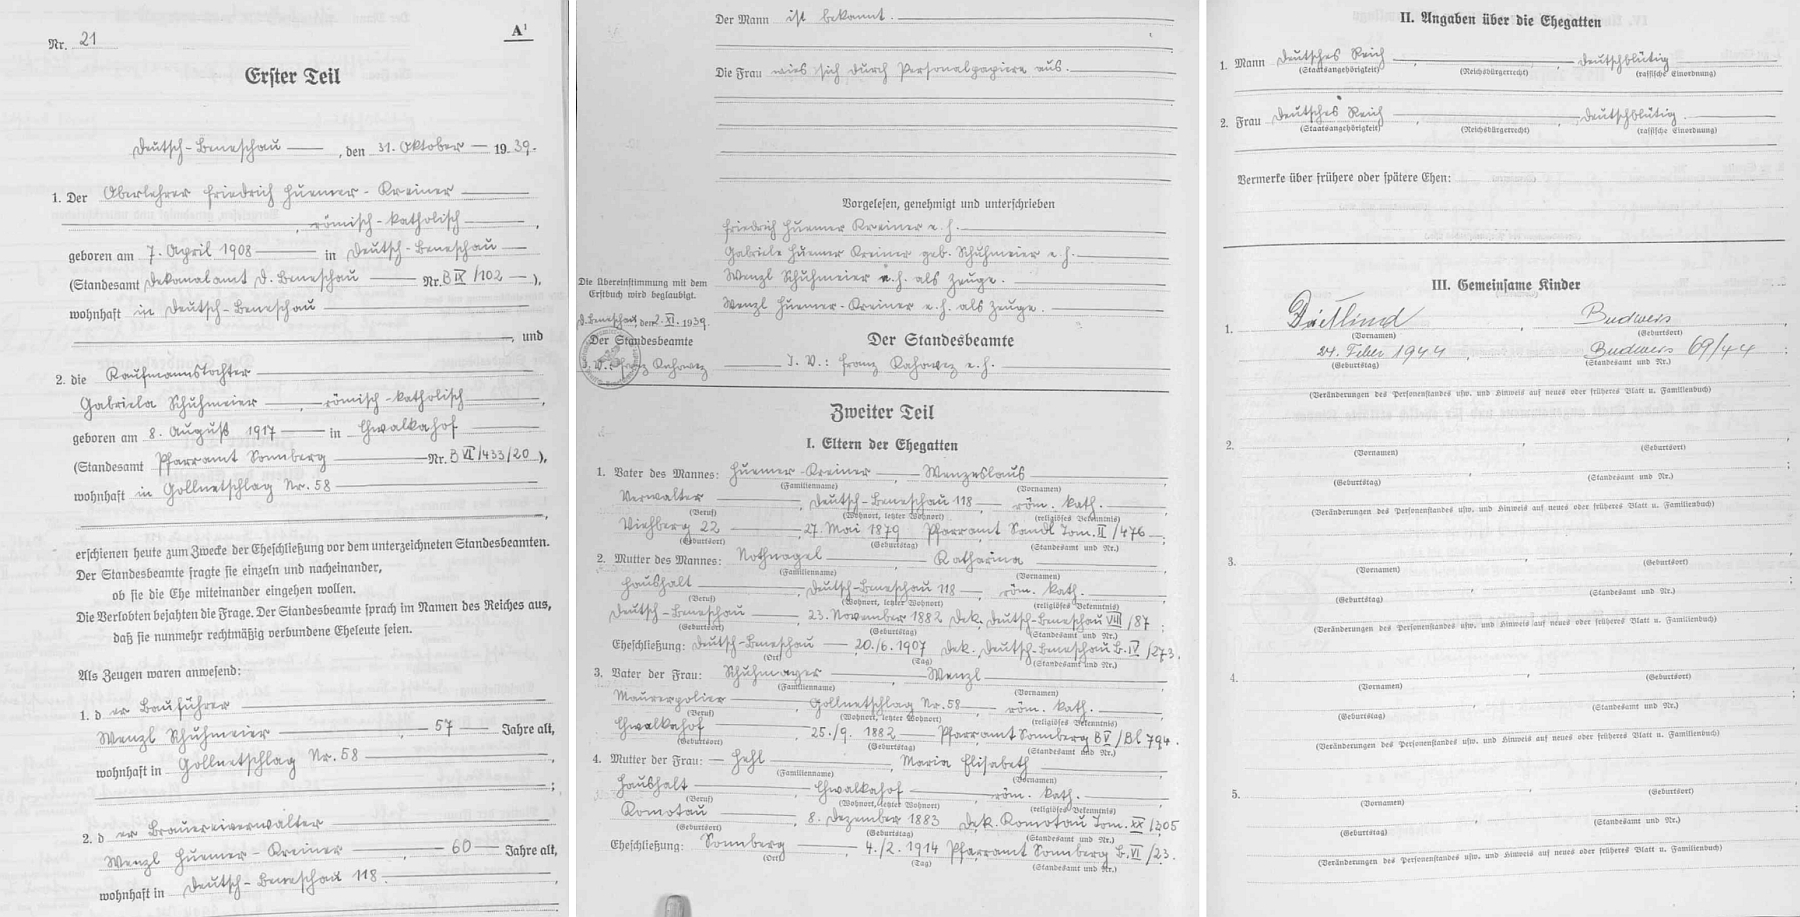 Tři stránky stavovské matriky z tehdejšího Německého Benešova zaznamenávají jeho zdejší svatbu v říjnu roku 1939